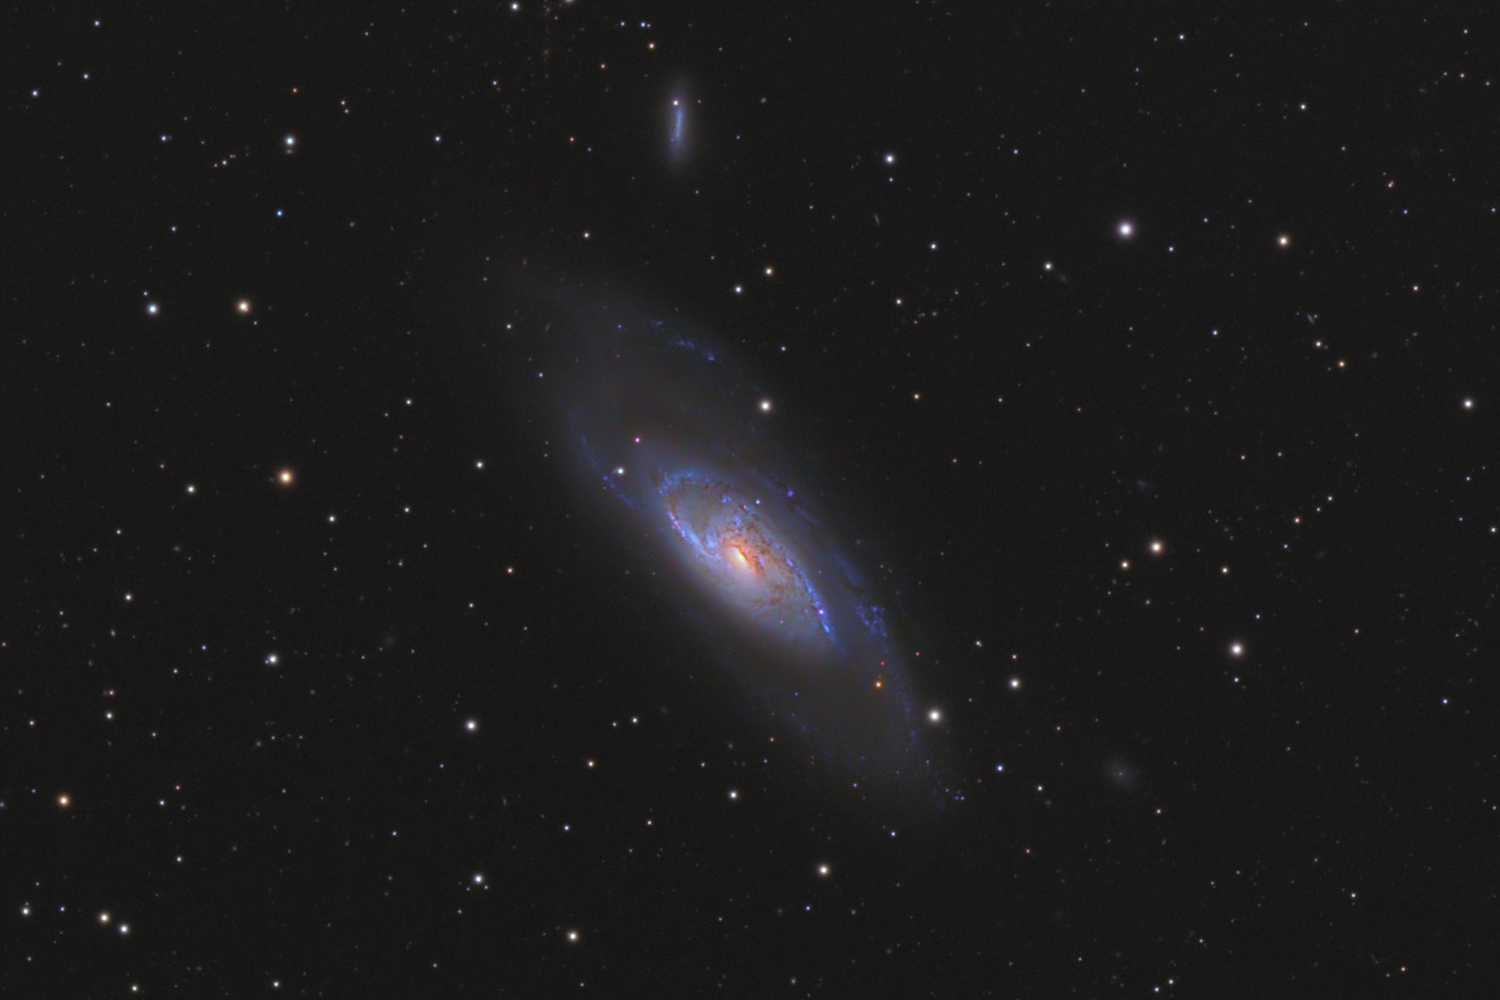 M106 - Galaxie in Canes Venatici M 106